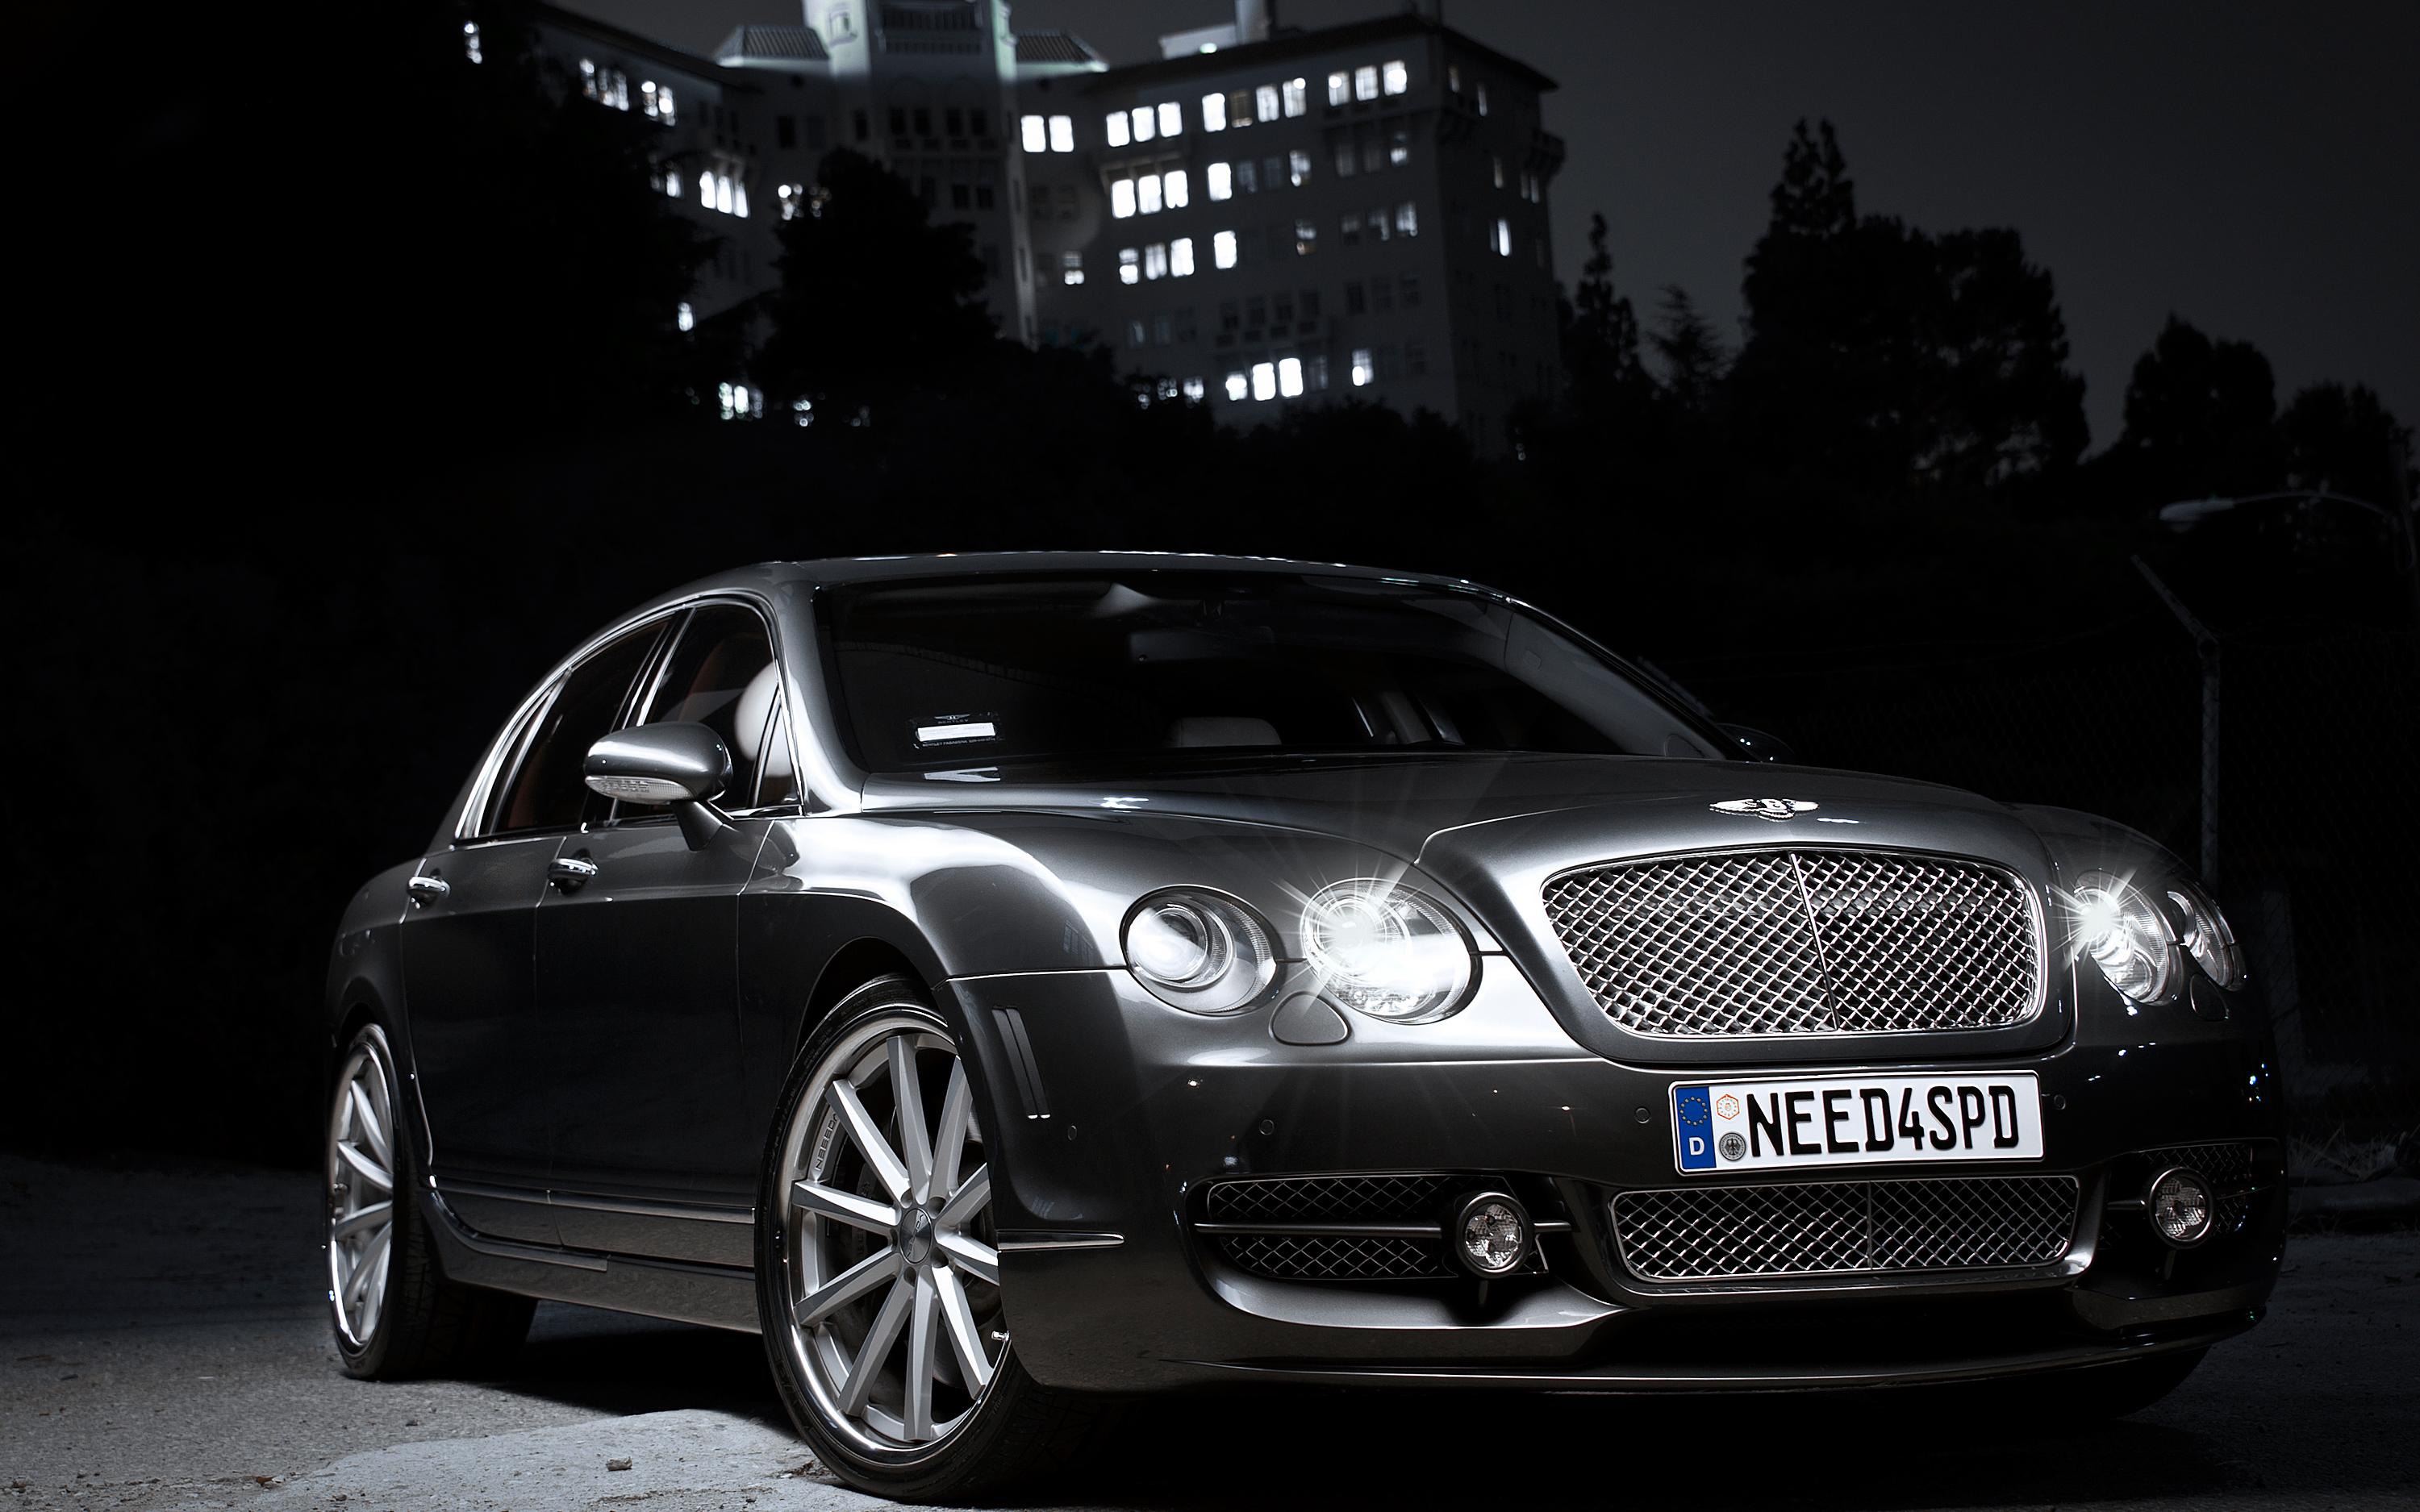 2012 Bentley Continental Flying Spur - Bentley - HD Wallpaper 